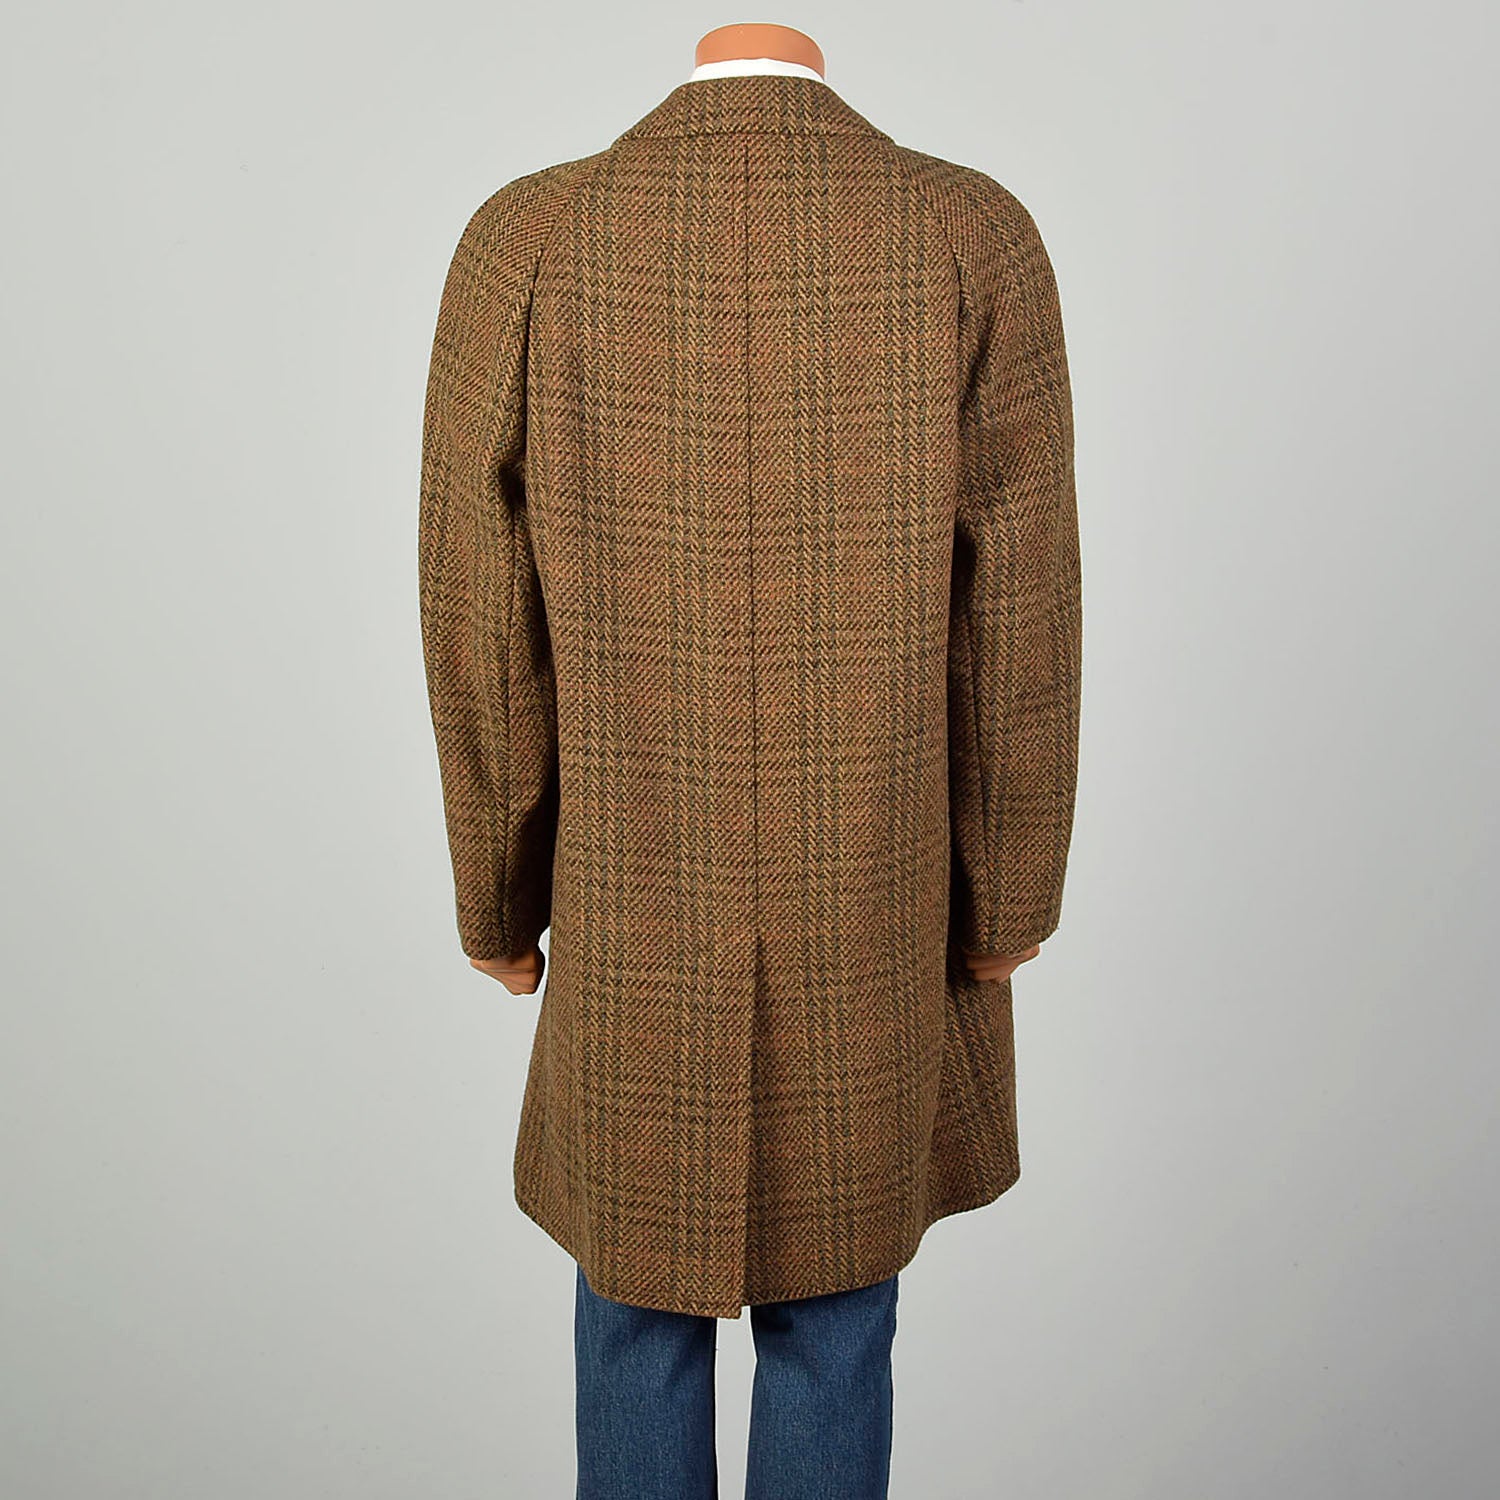 XL 1970s Jacket Brown Plaid Herringbone Wool Tweed Winter Car Coat